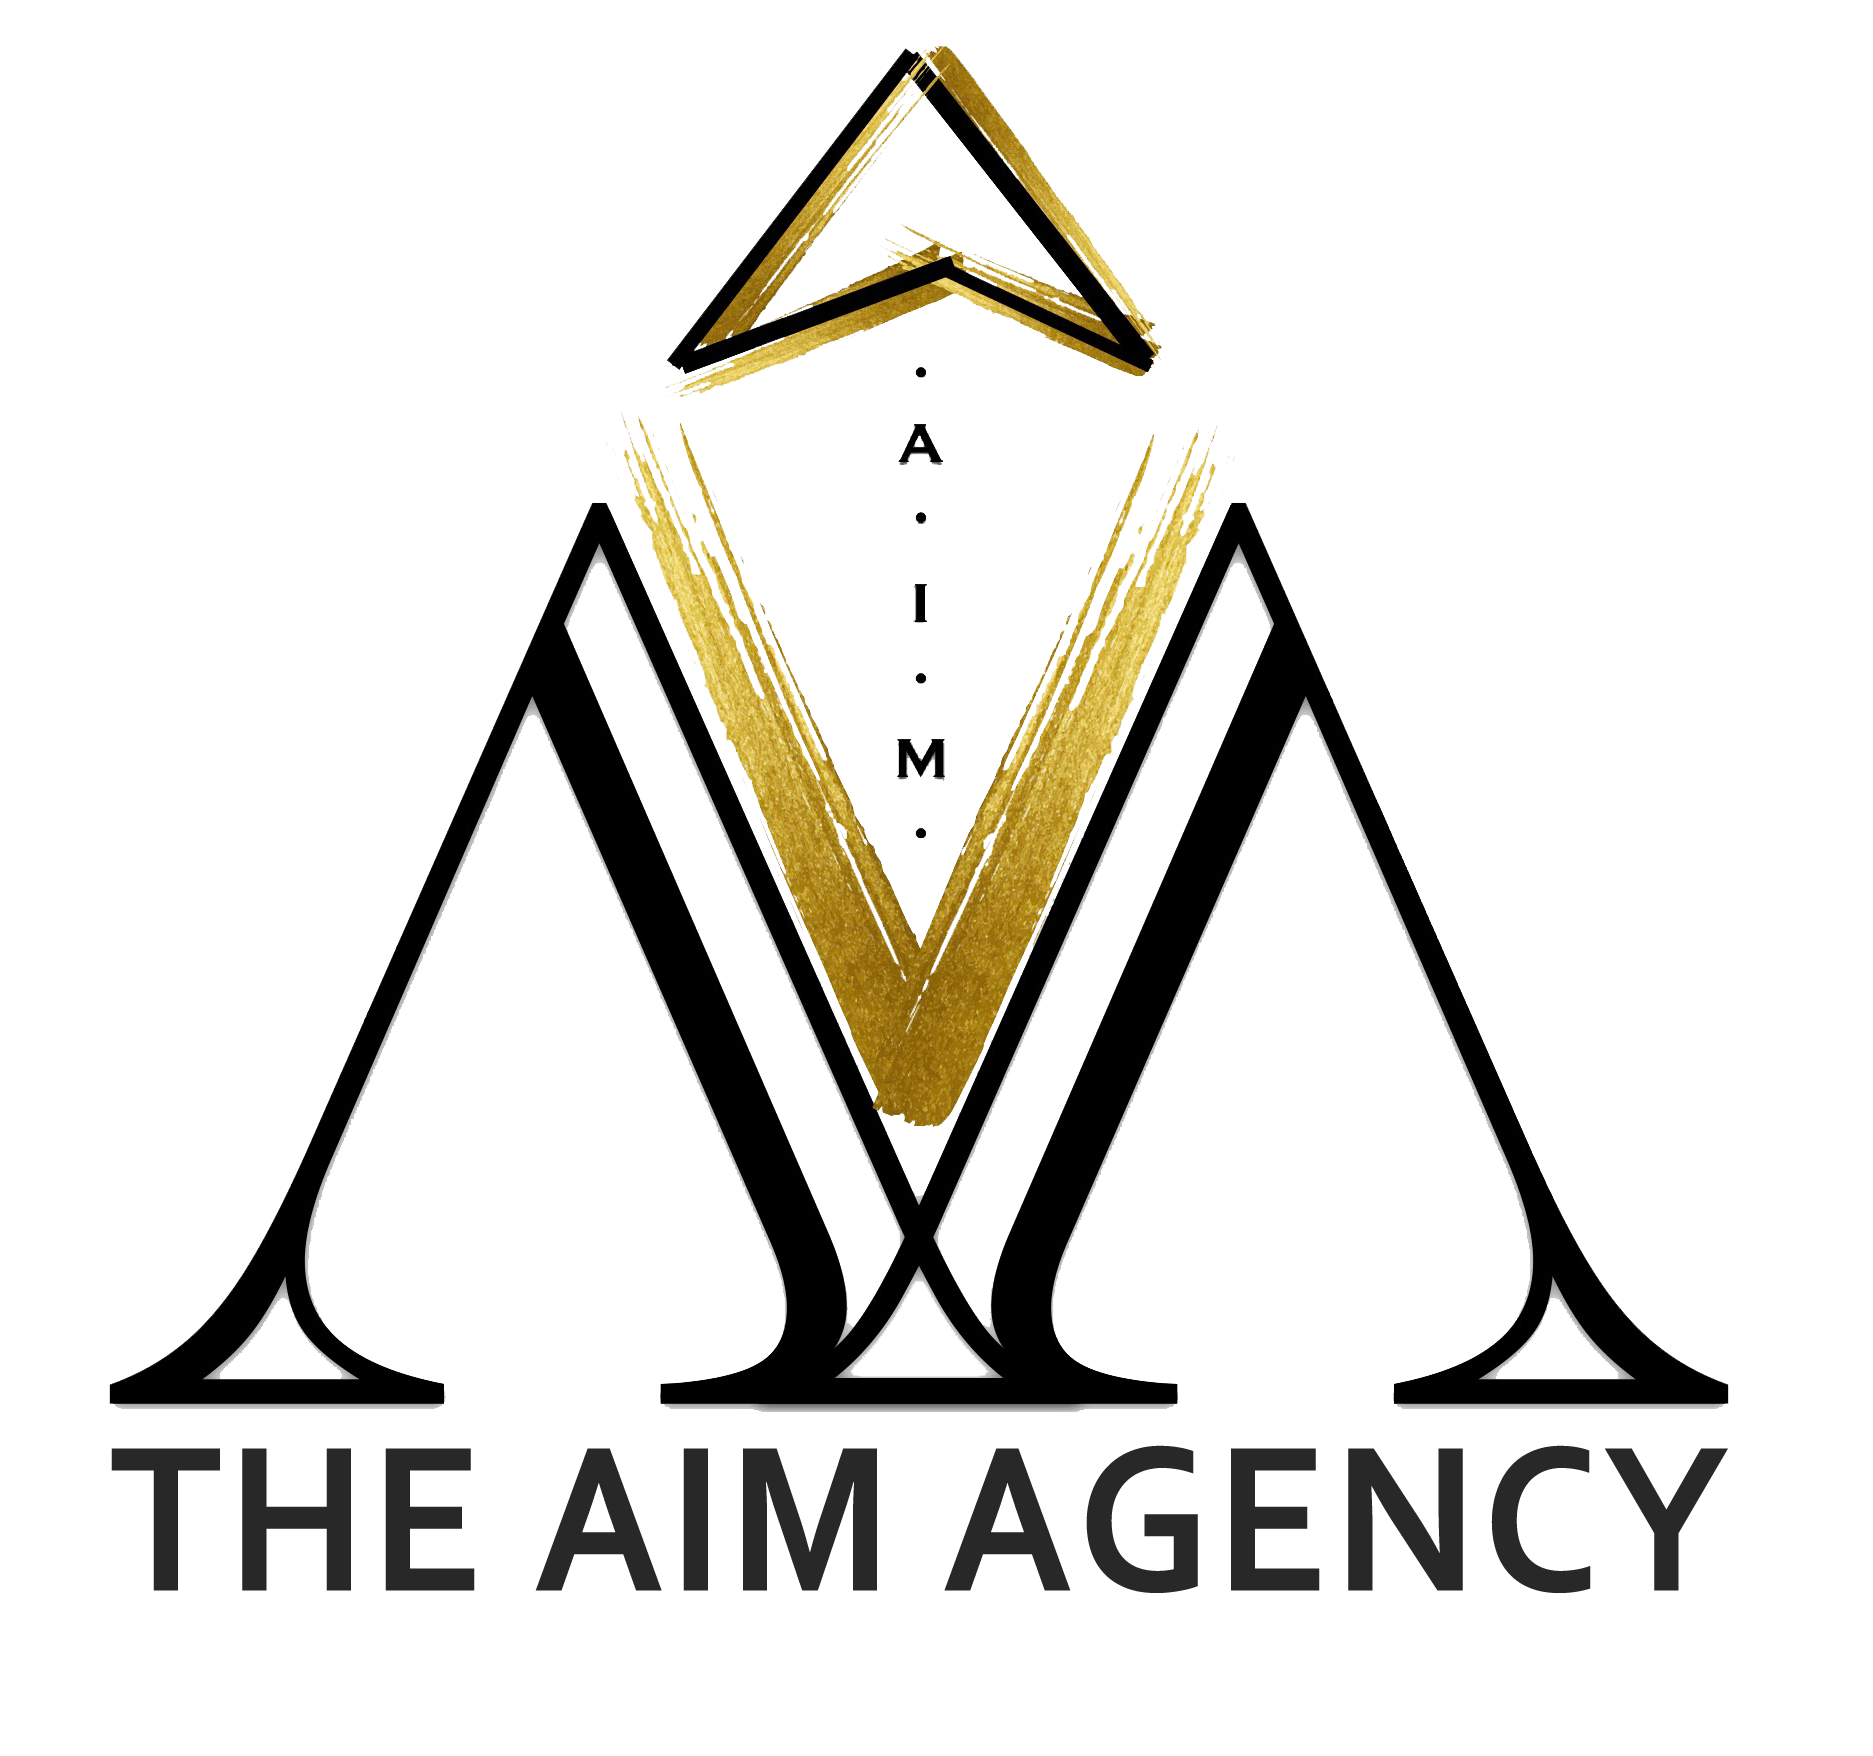 The AIM Agency